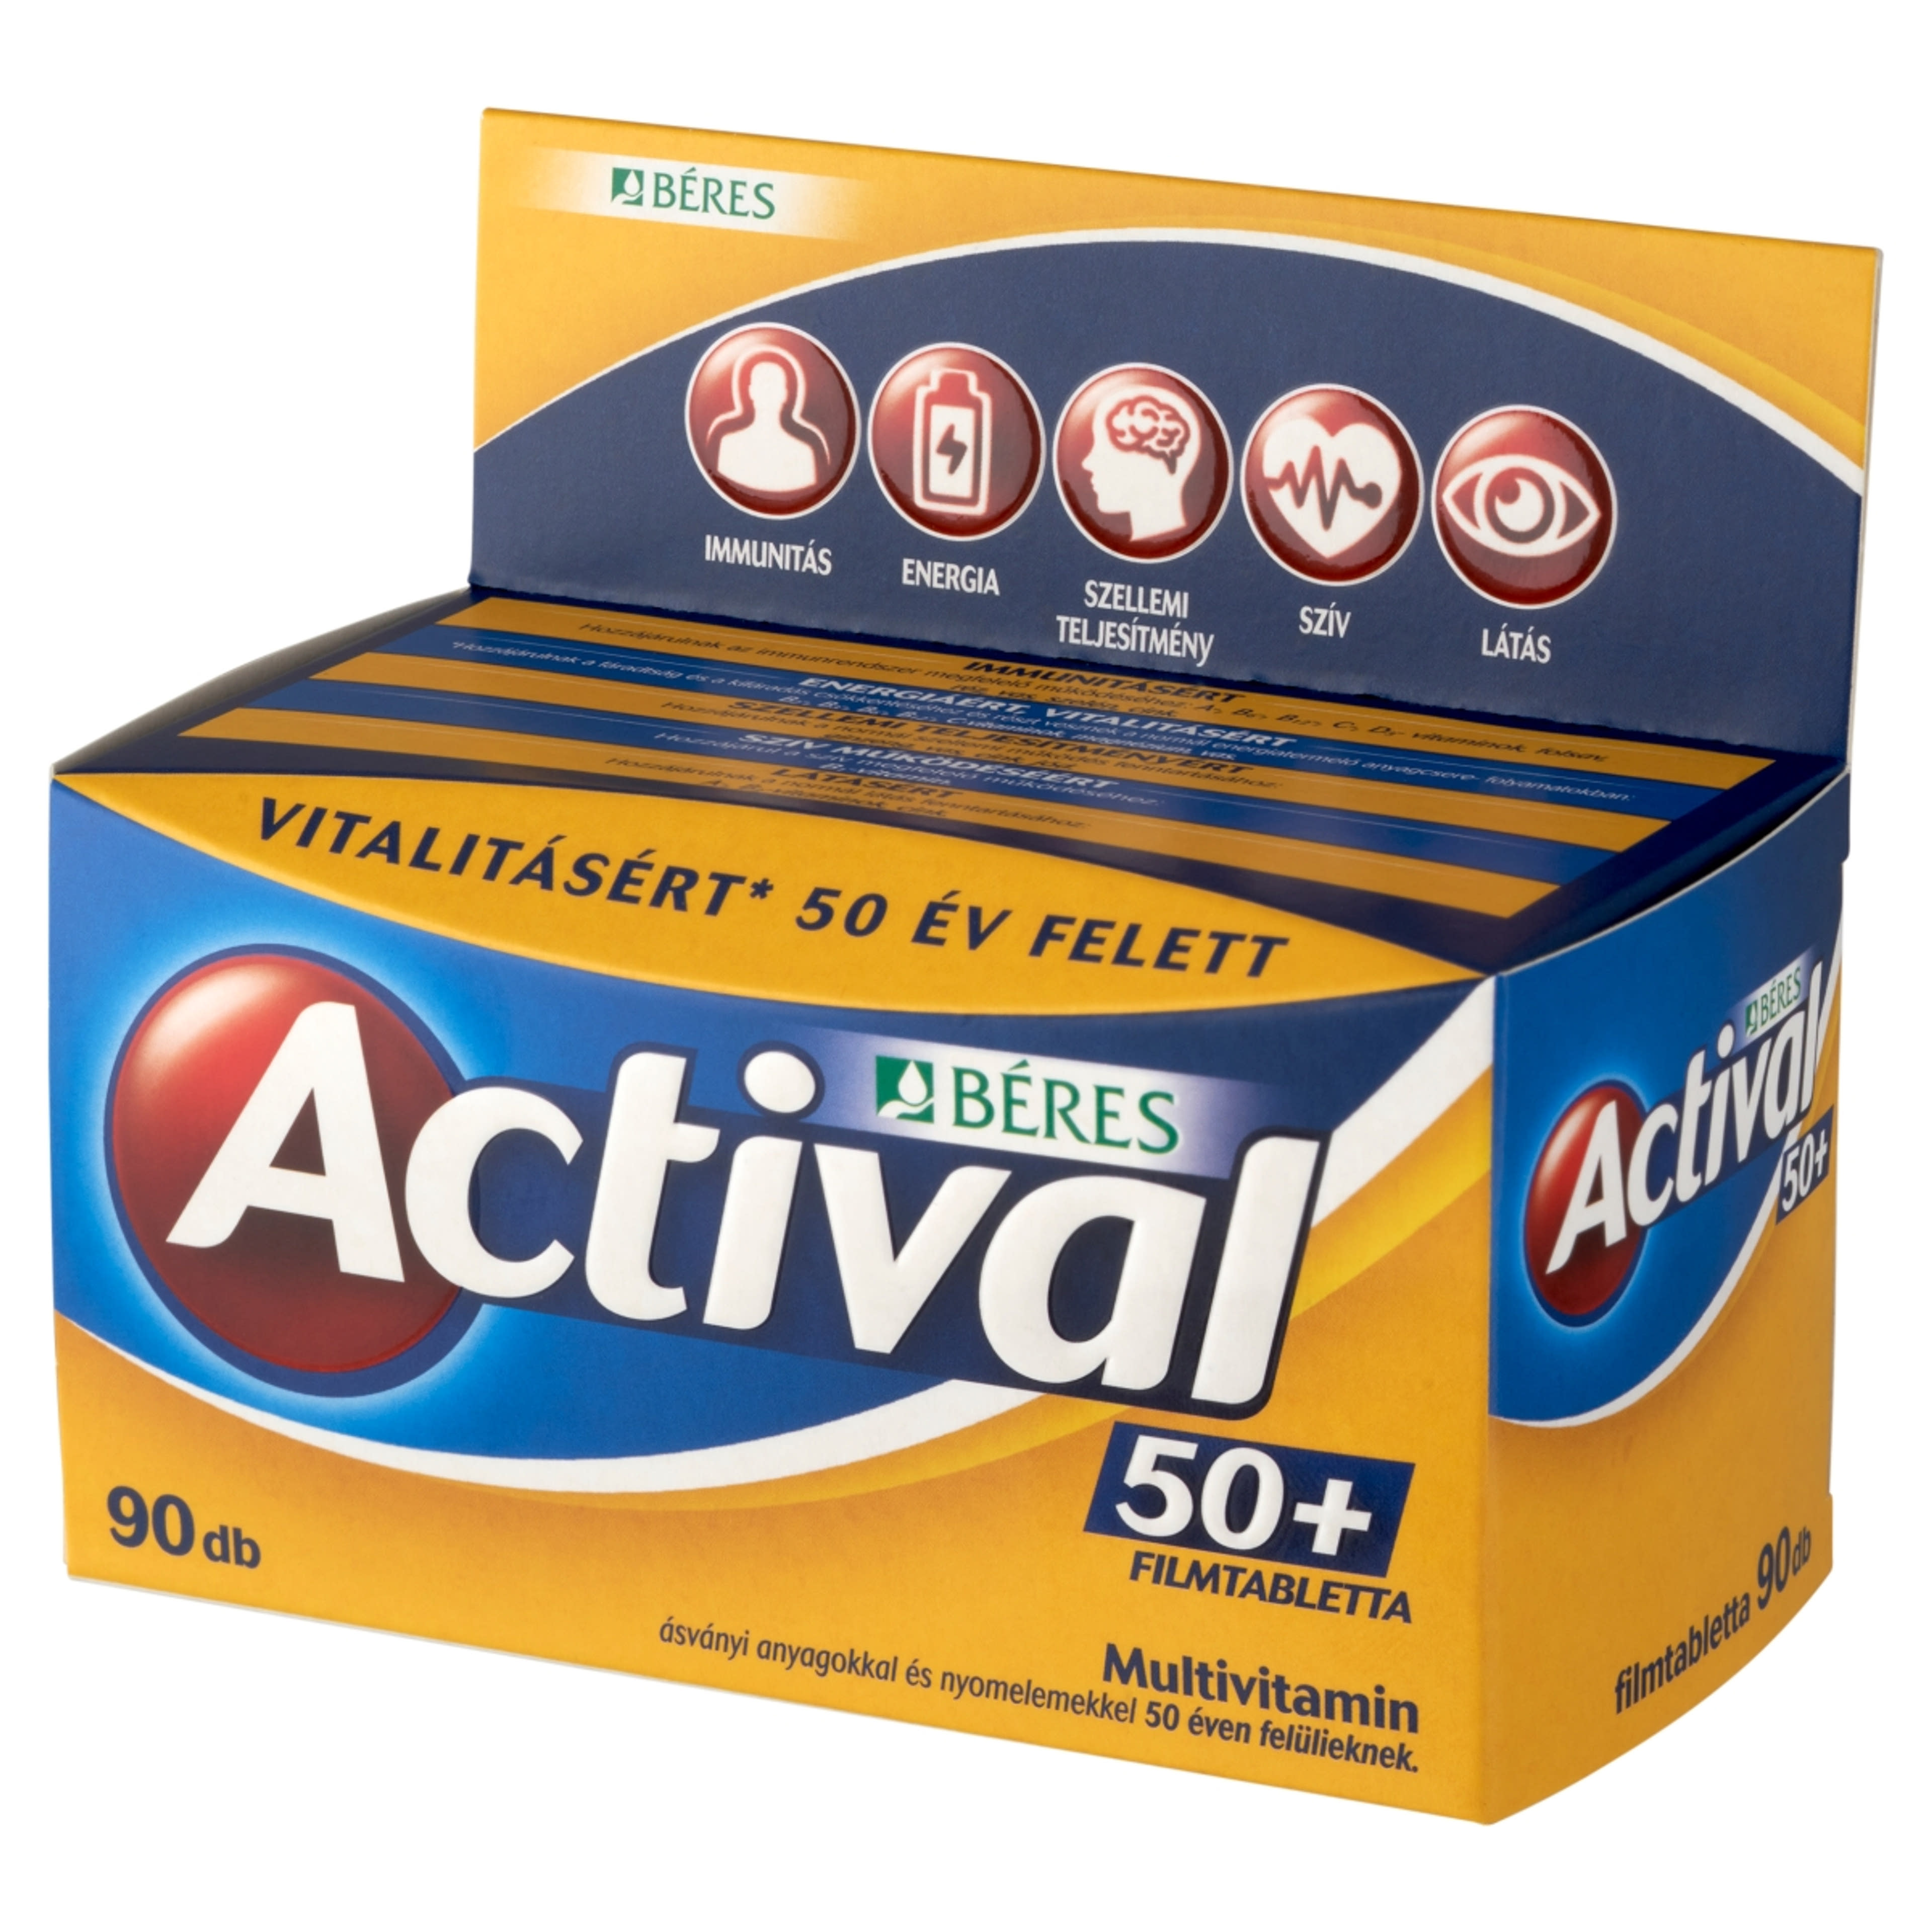 Actival 50+ filmtabletta - 90 db-3